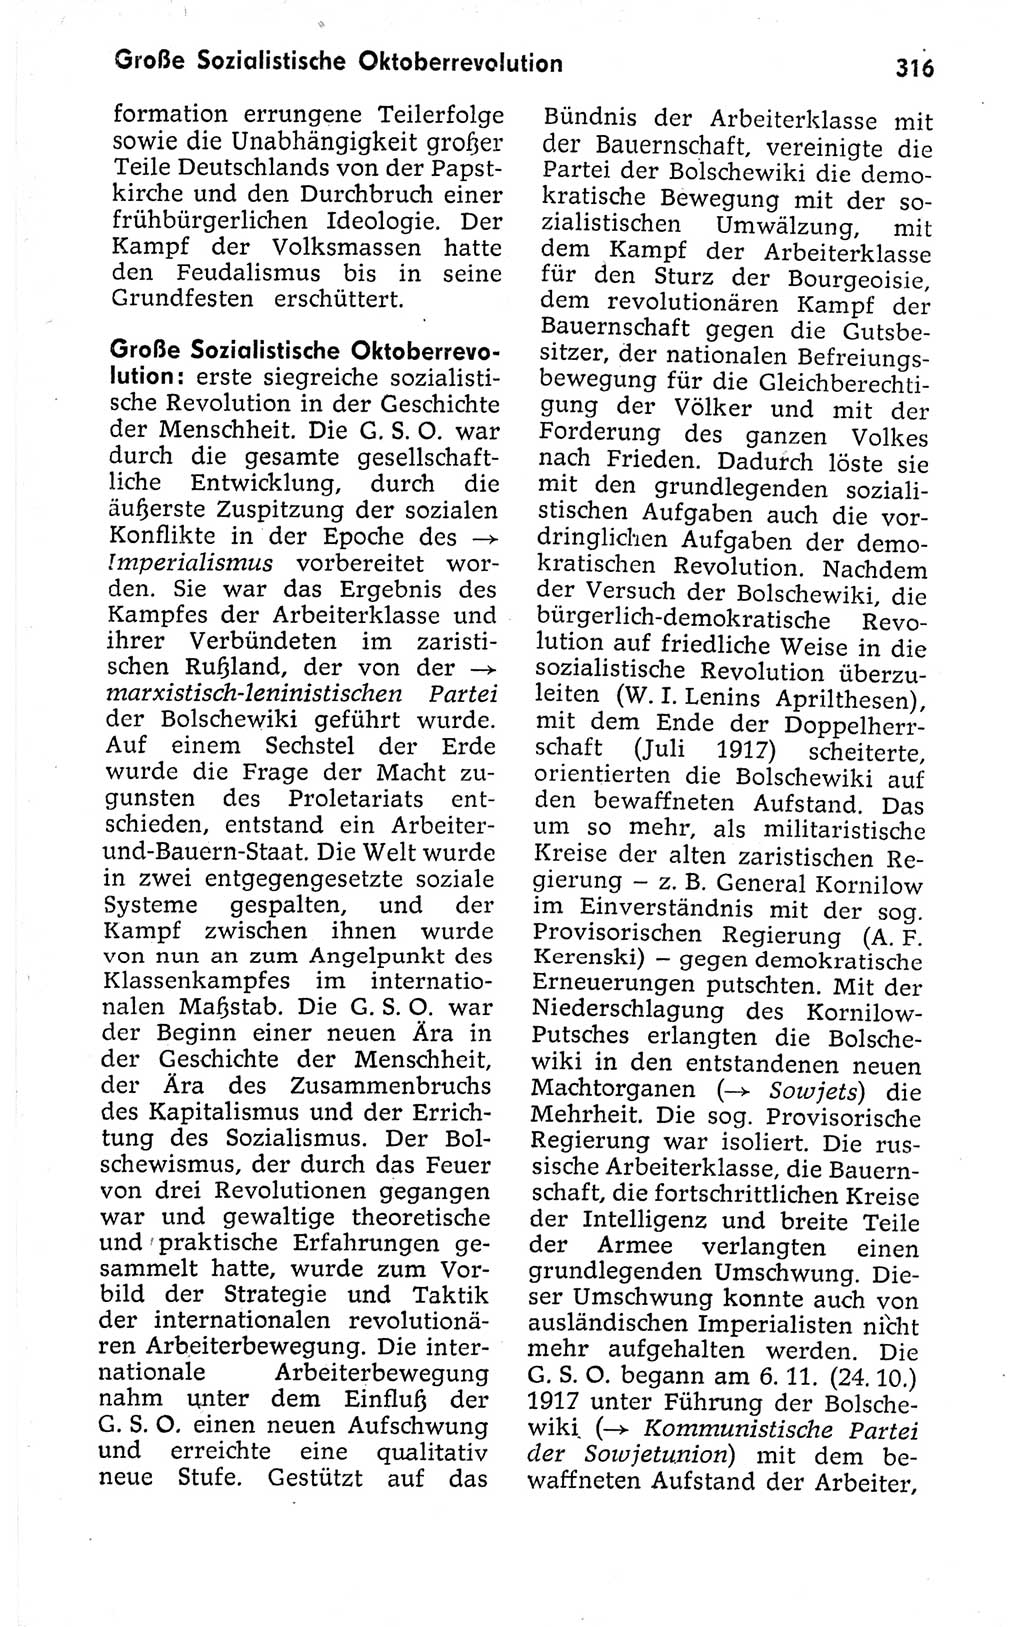 Kleines politisches Wörterbuch [Deutsche Demokratische Republik (DDR)] 1973, Seite 316 (Kl. pol. Wb. DDR 1973, S. 316)